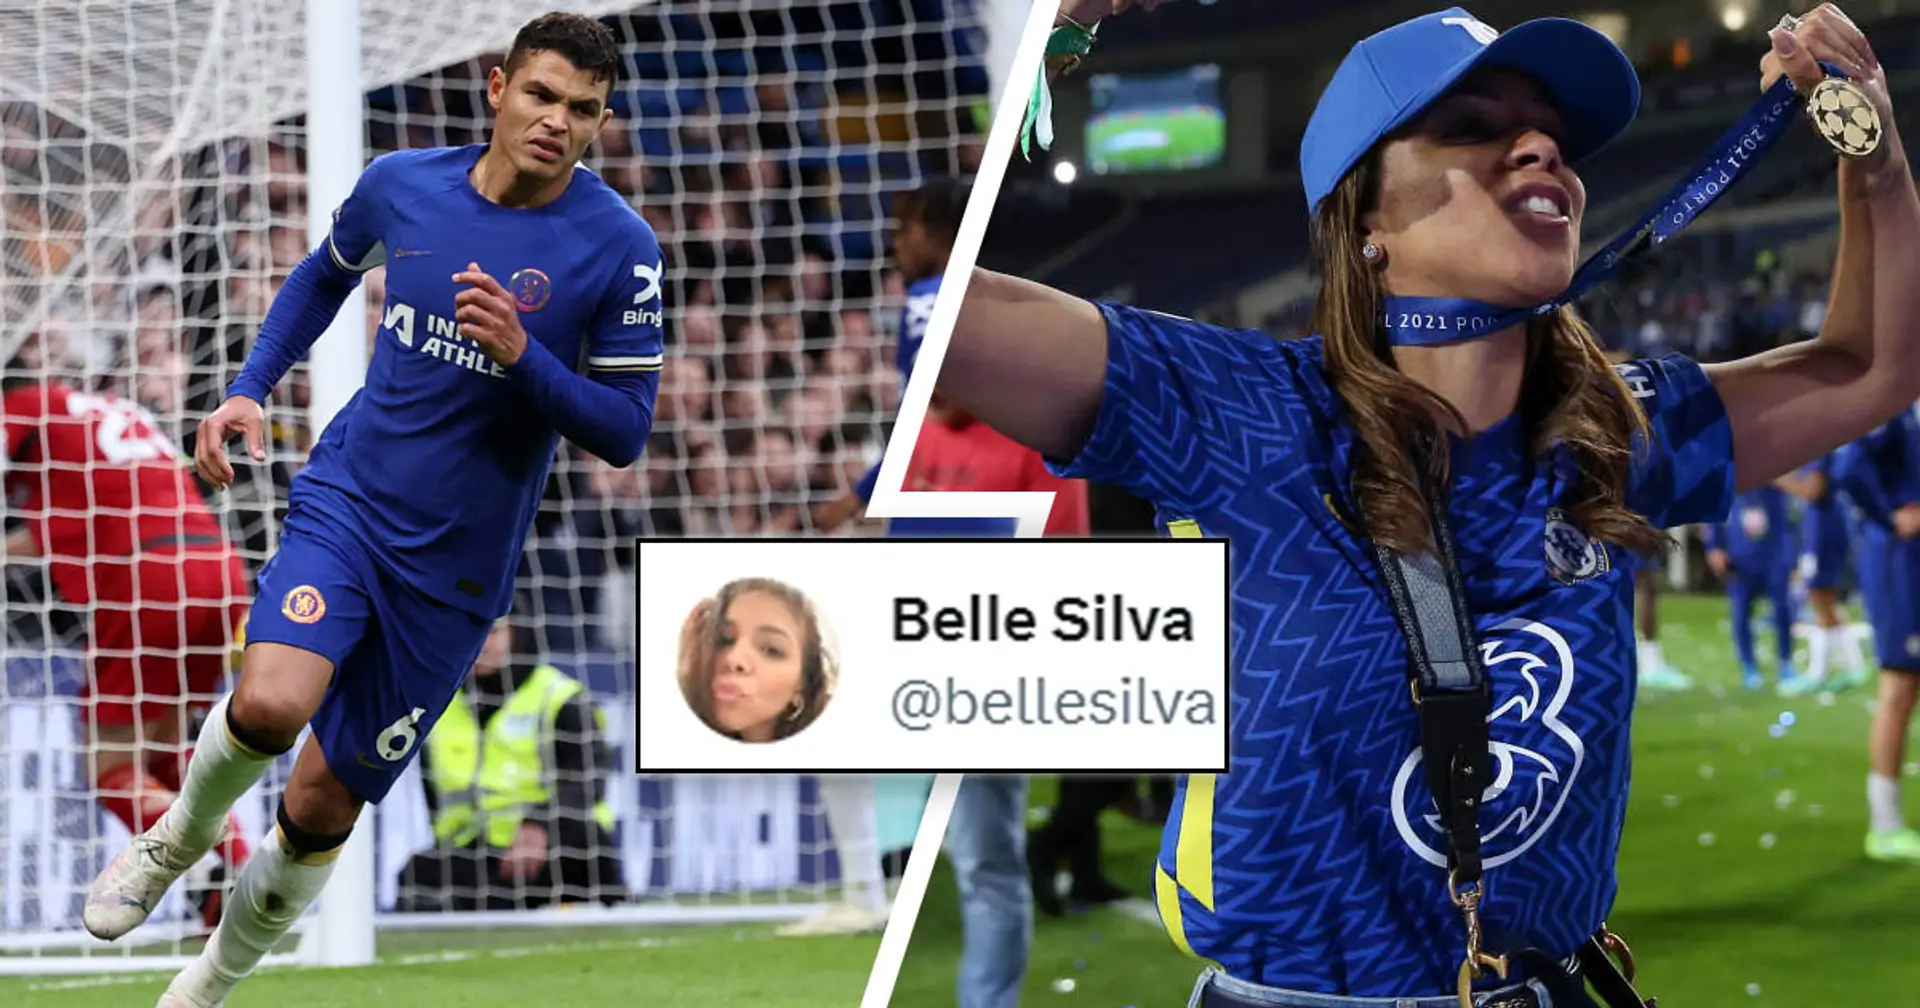 "Il sera trop tard" : Belle Silva envoie un message discret aux propriétaires de Chelsea après l'humiliation contre les Wolves